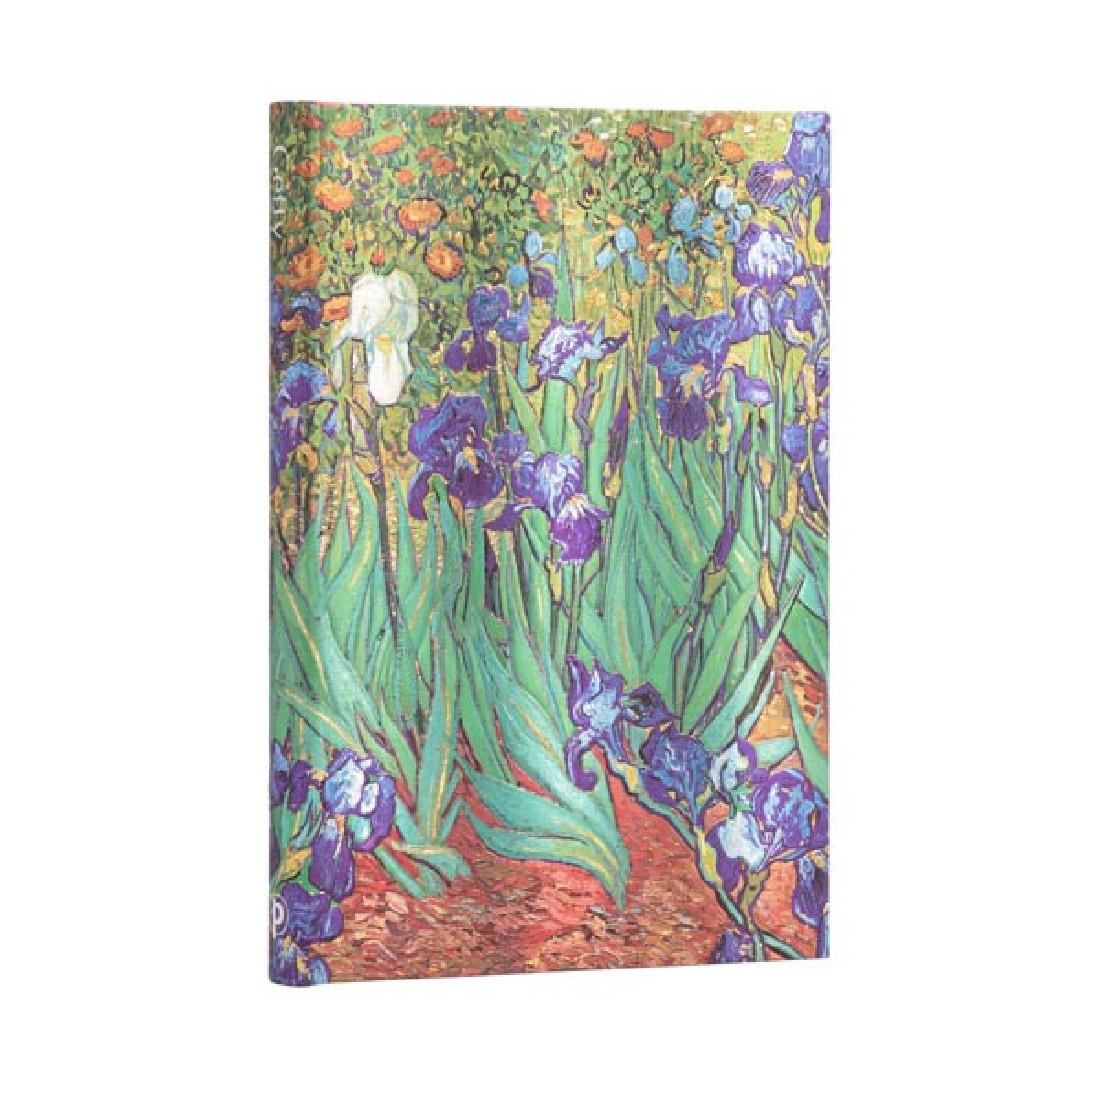 Paperblanks Notebook Van Gogh Irises Midi 13x18 Lined